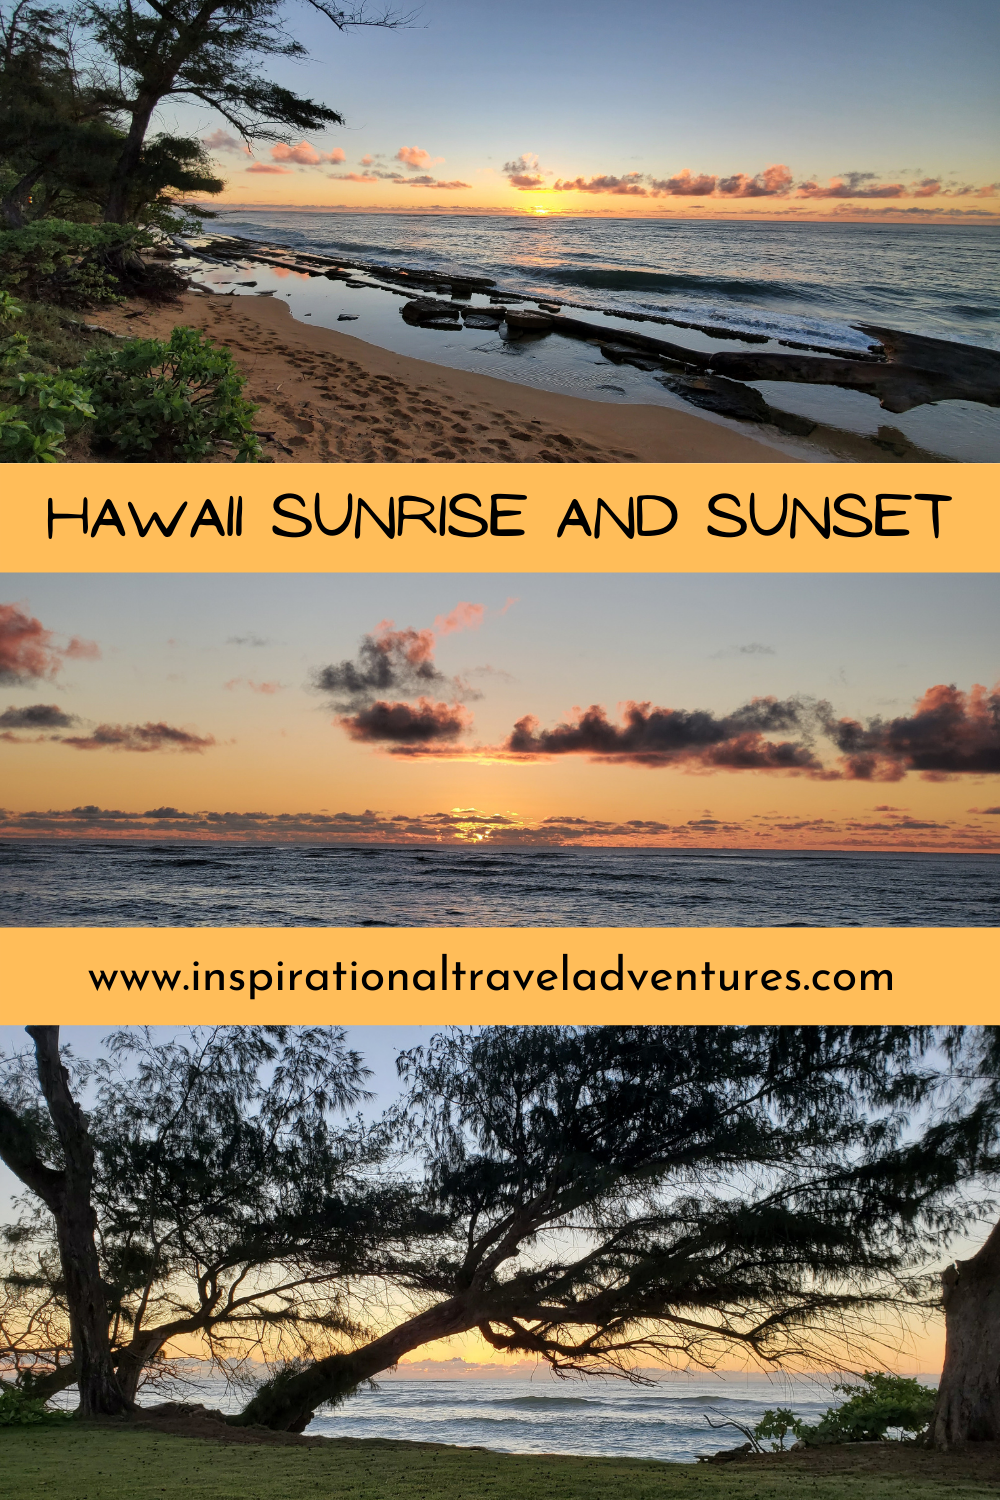 HAWAII SUNRISE AND SUNSET